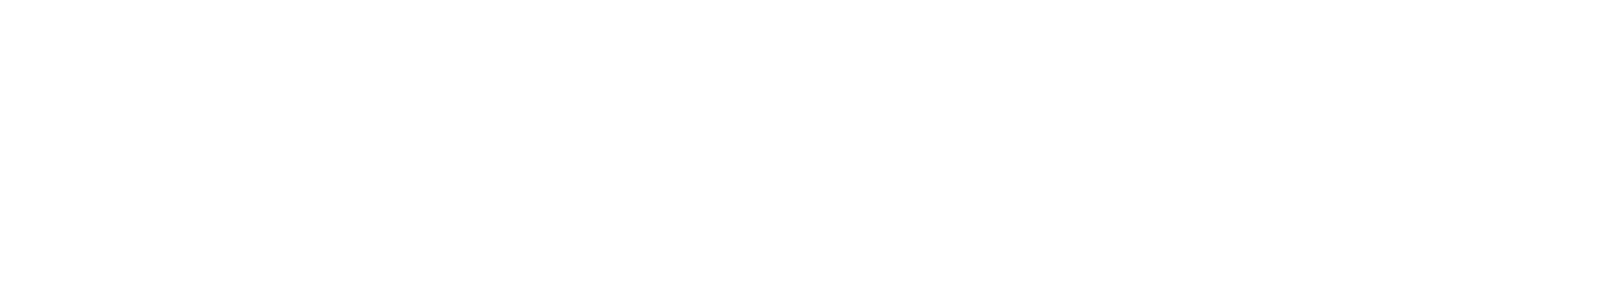 GÜBRETAŞ logo grand pour les fonds sombres (PNG transparent)